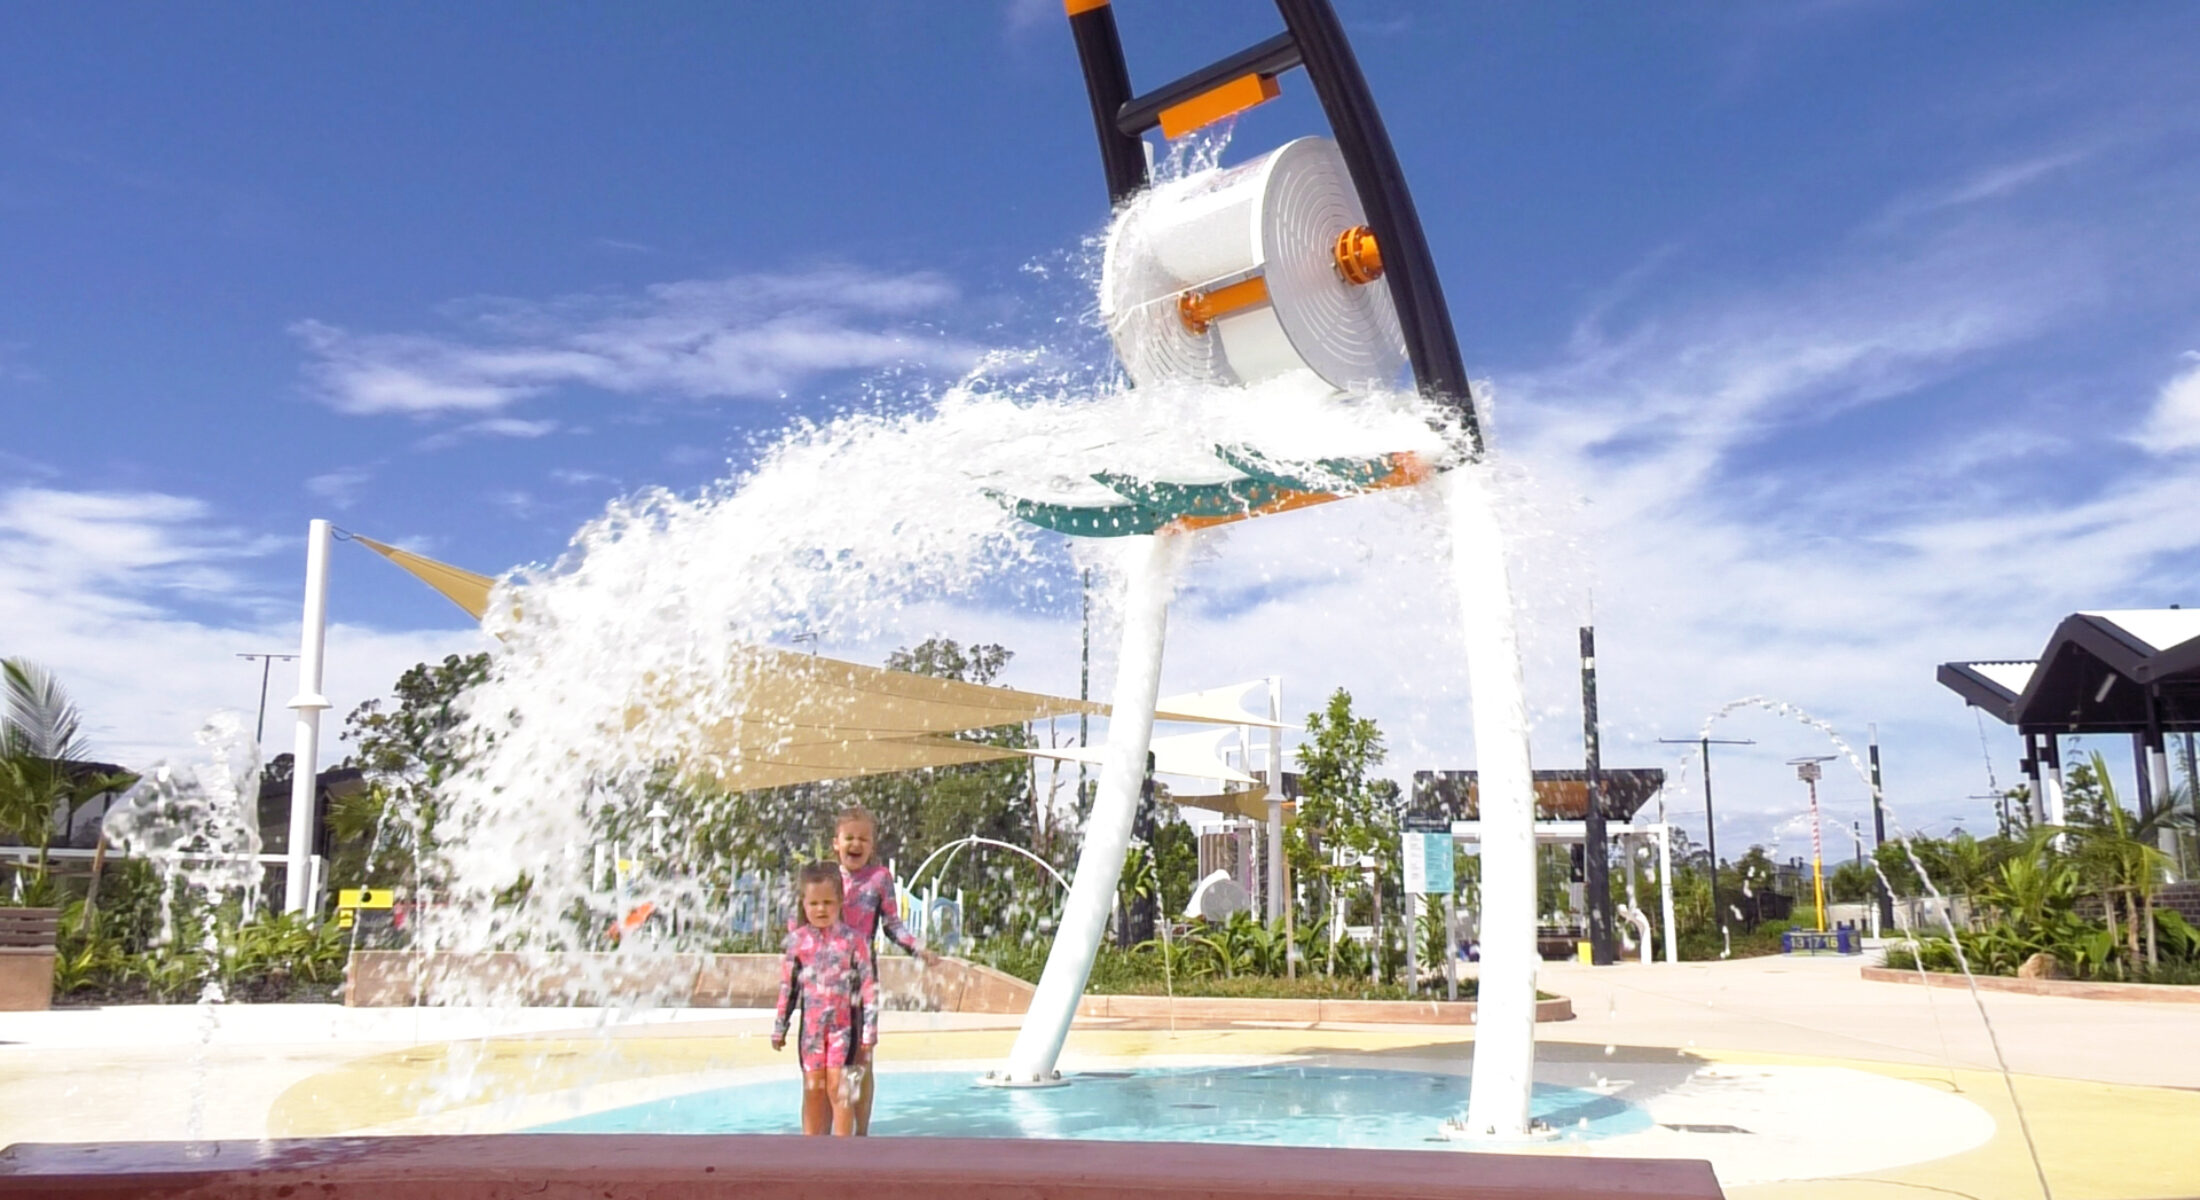 The Mill Playground Water Bucket Moreton Bay Region best playgrounds Brisbane best parks brisbane